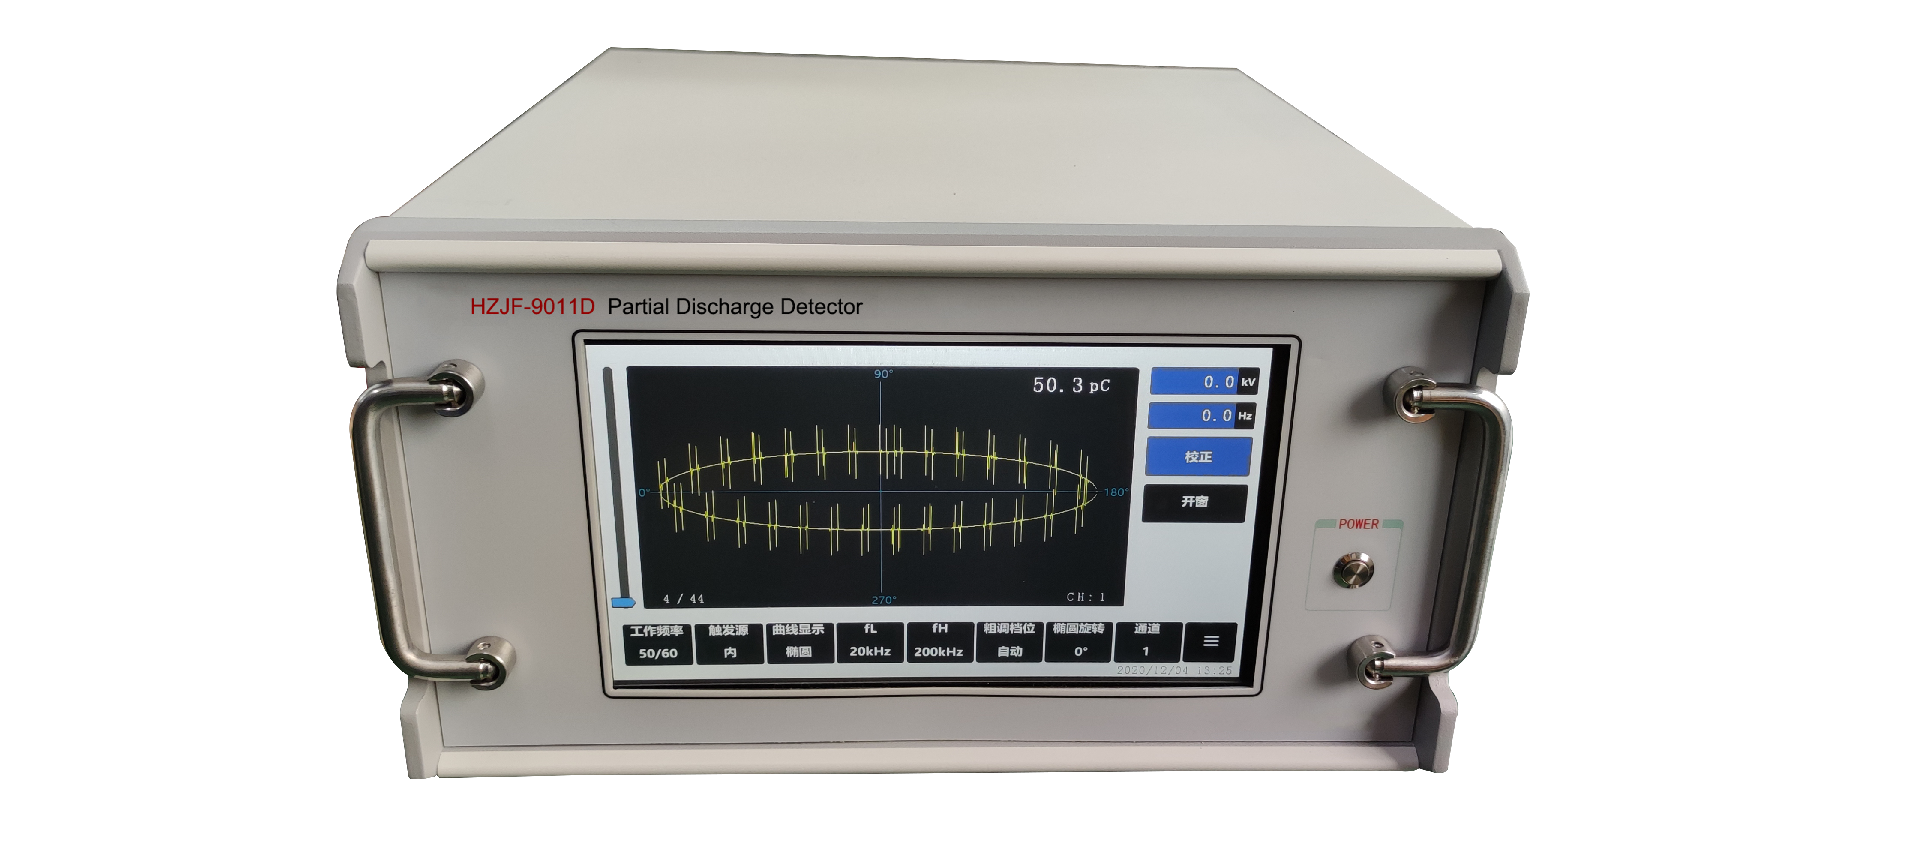 HZJF-9011D Partial Discharge Detector